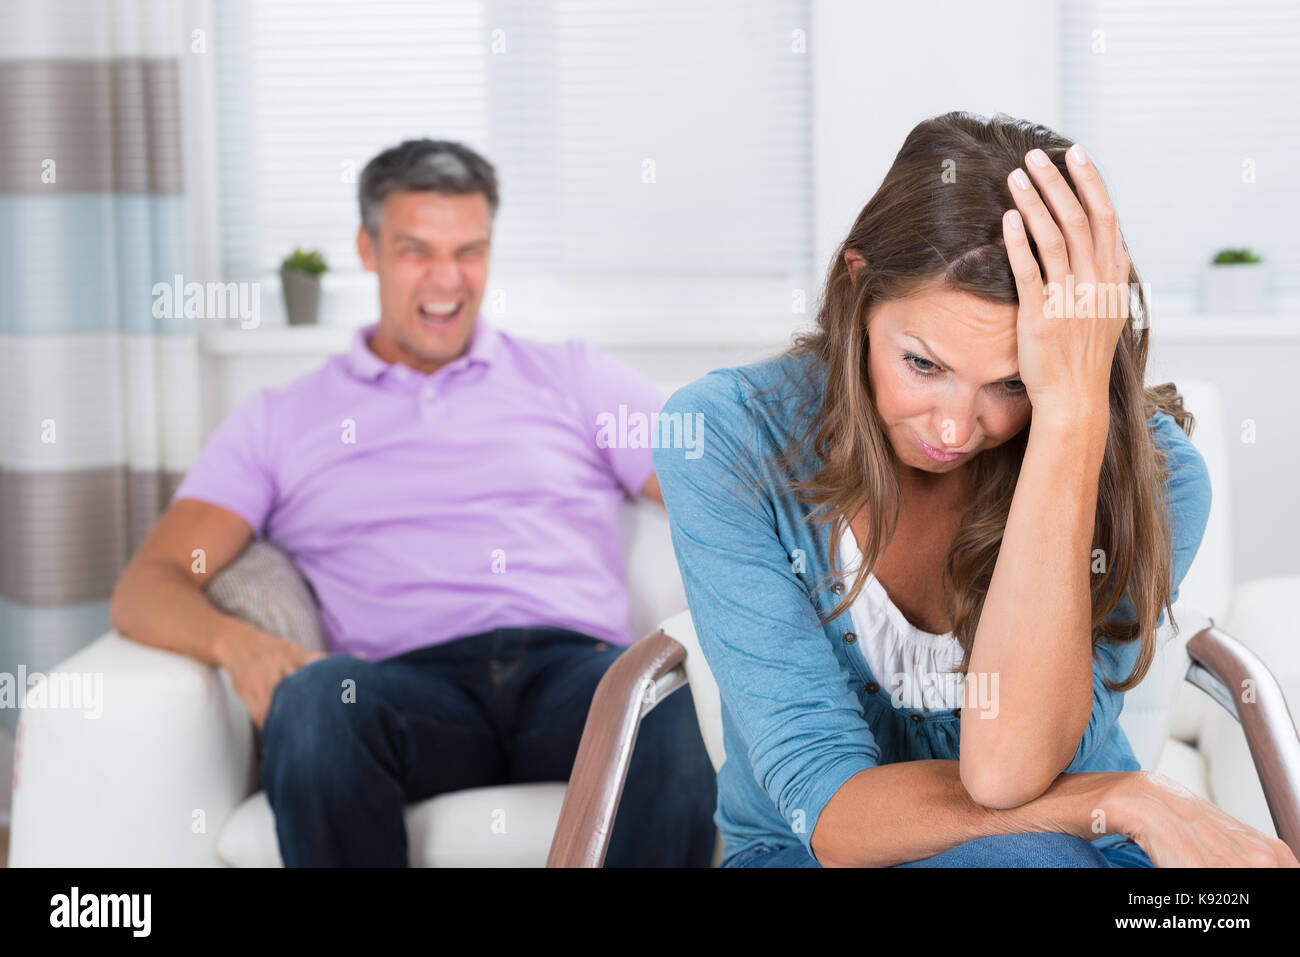 Reifer Mann zu schreien Der frustrierte Frau sitzt auf Stuhl Stockfoto